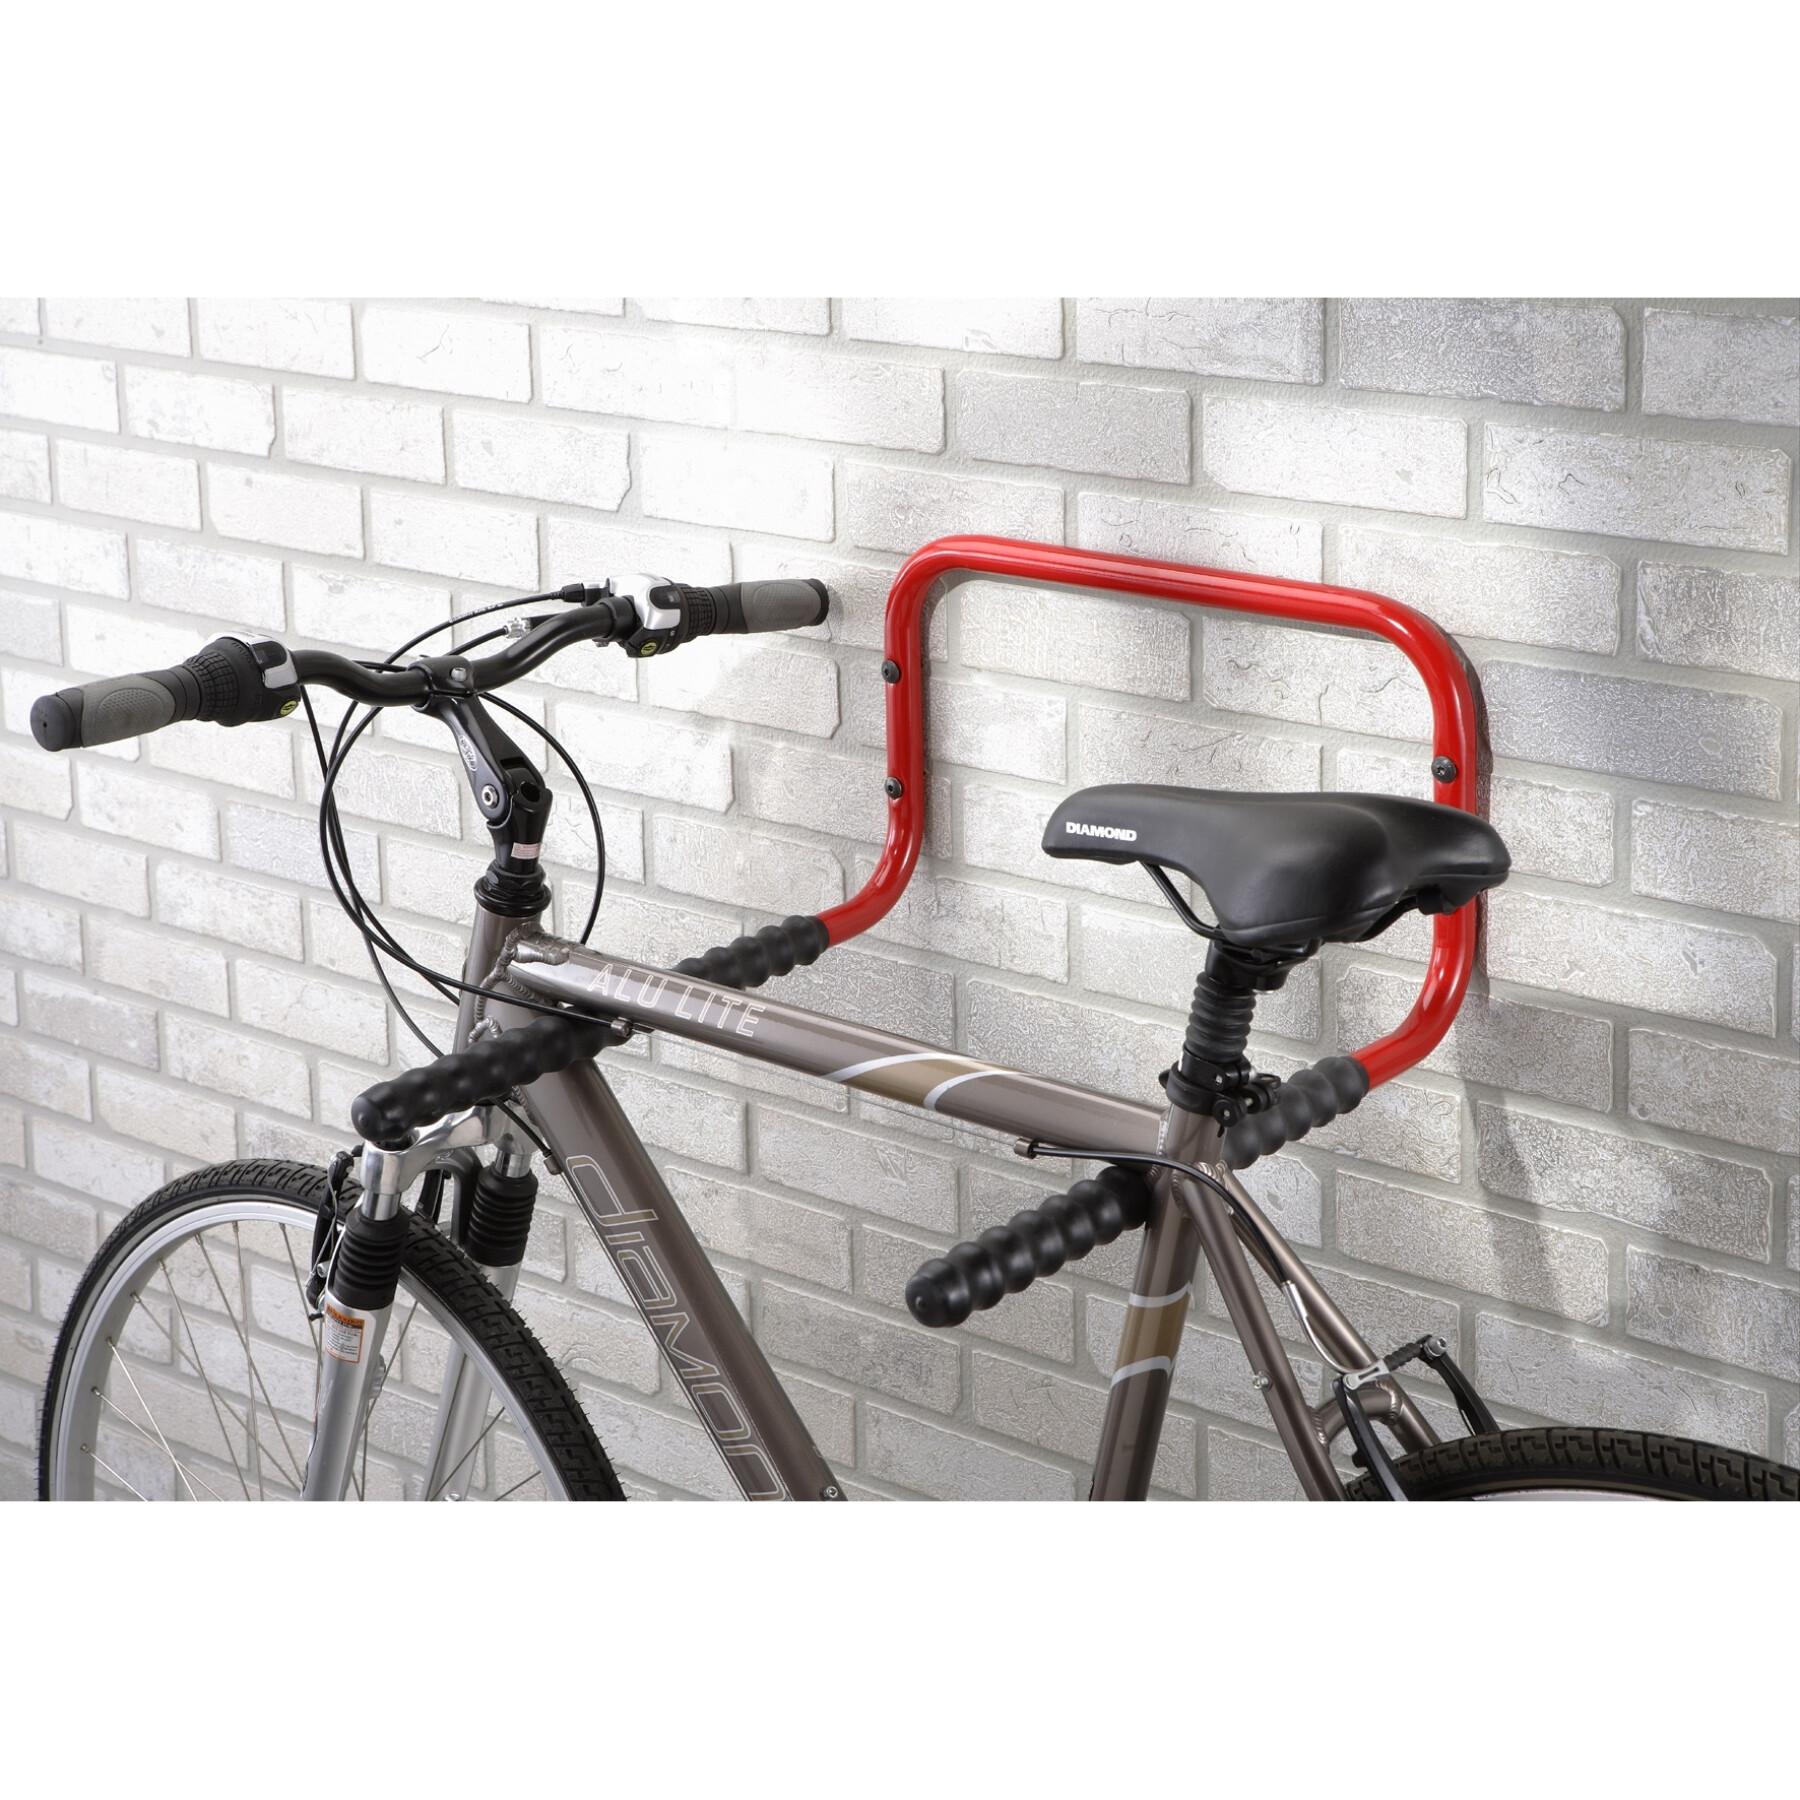 Soporte de pared de bicicleta para 2 bicicletas universal Selection P2R